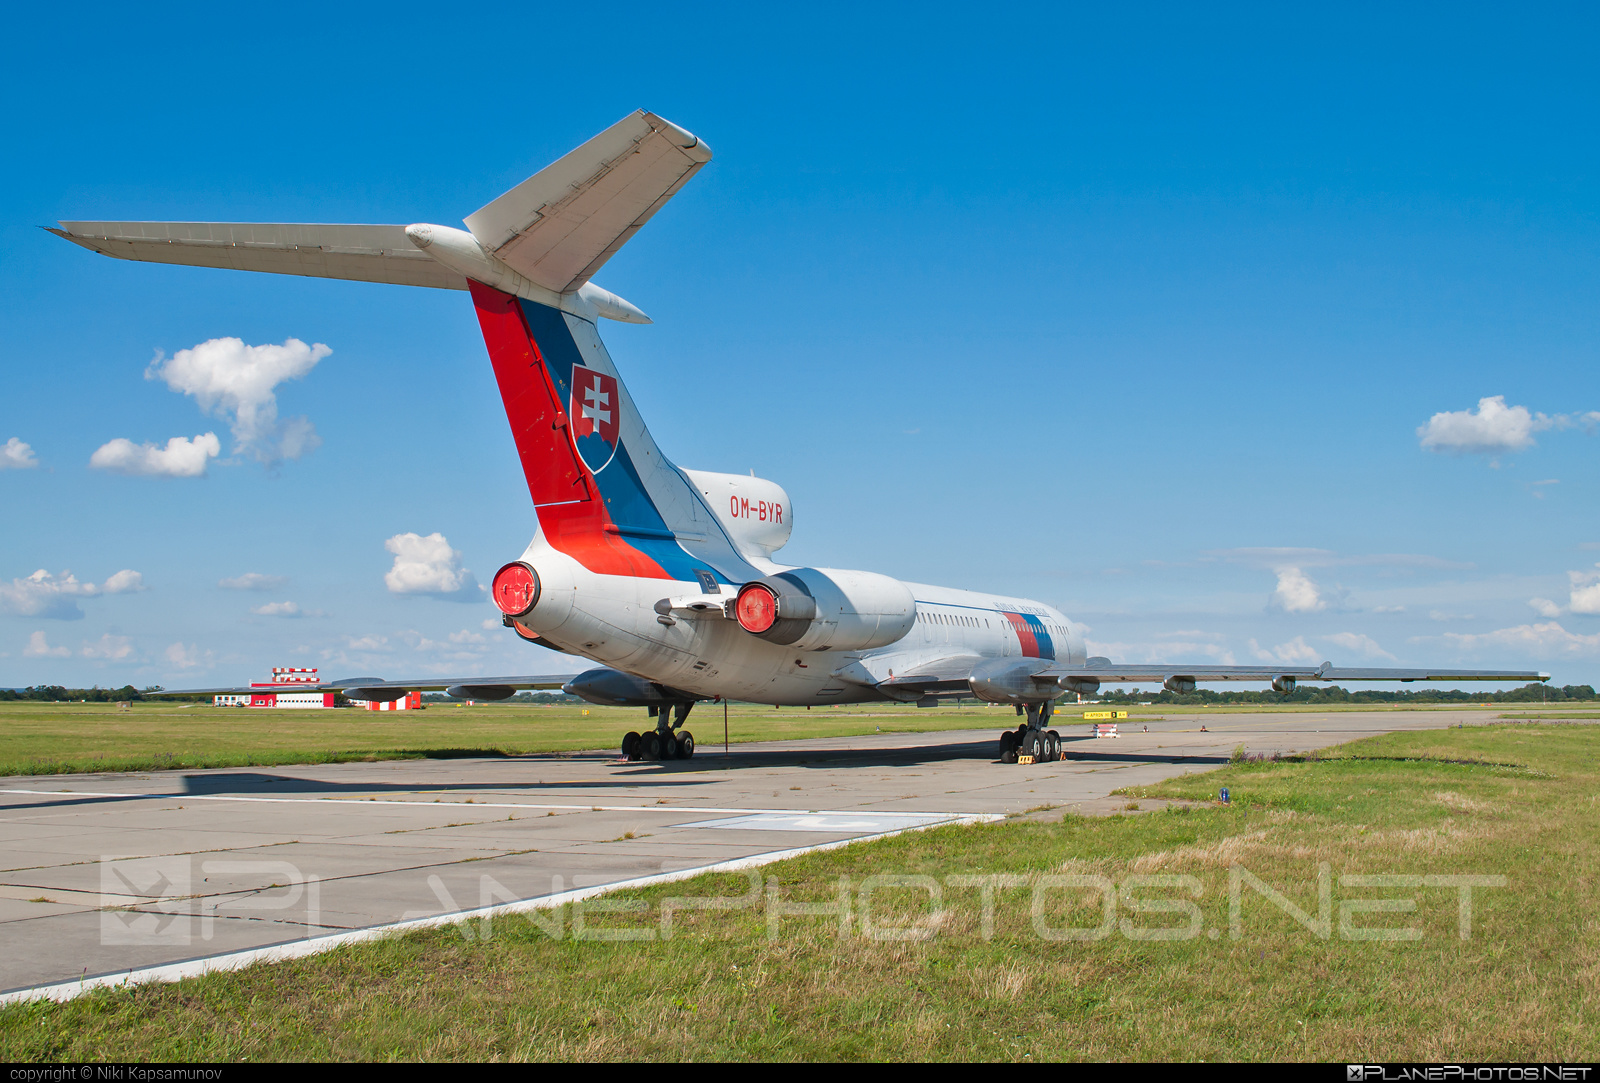 Tupolev Tu-154M - OM-BYR operated by Letecký útvar MV SR (Slovak Government Flying Service) #SlovakGovernmentFlyingService #leteckyutvarMVSR #tu154 #tu154m #tupolev